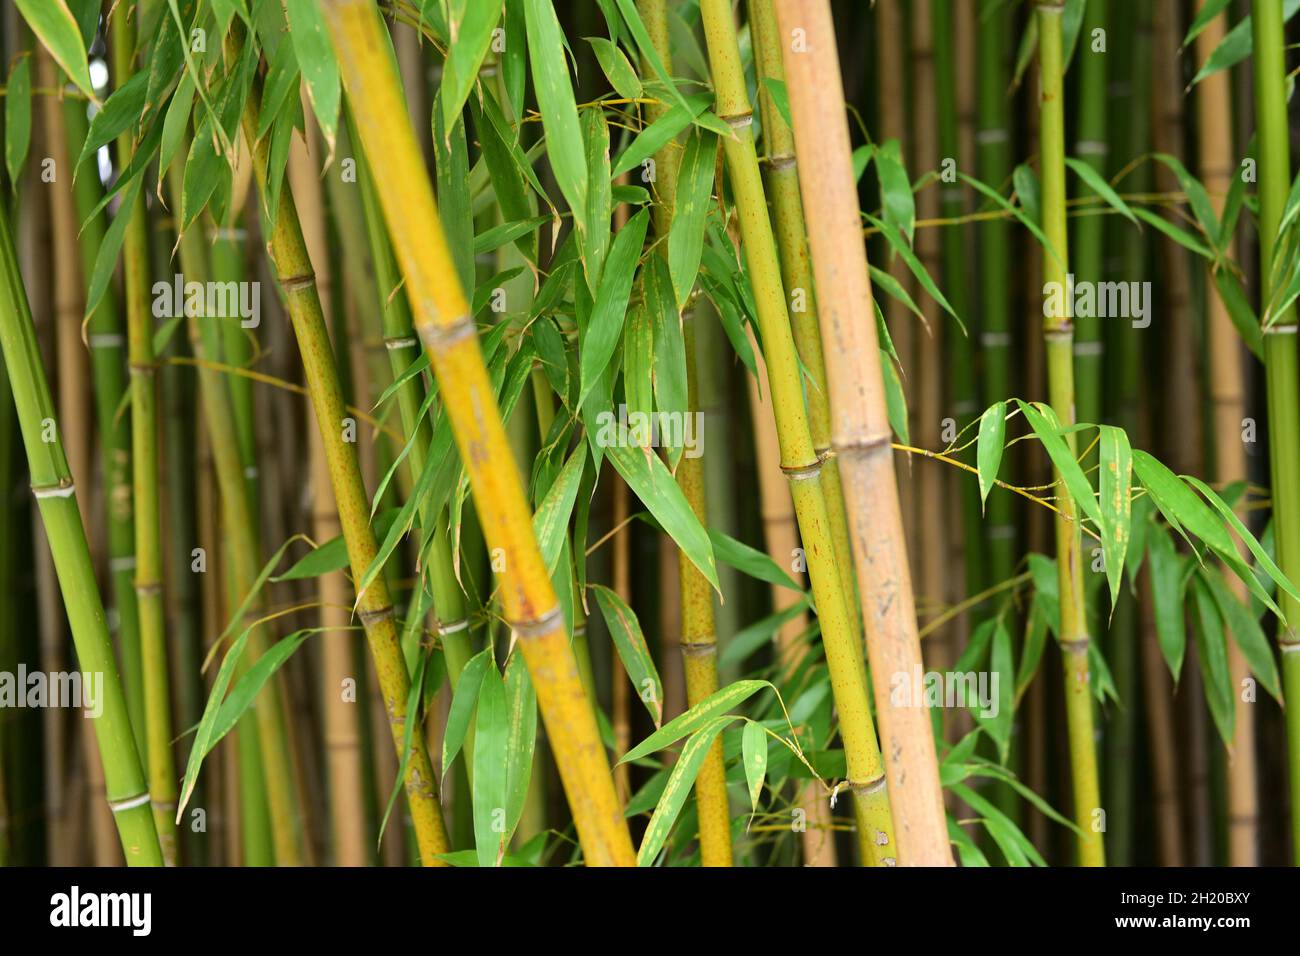 Bambus-Wald im Botanischen Garten in Wien, Österreich, Europa - Bamboo ...